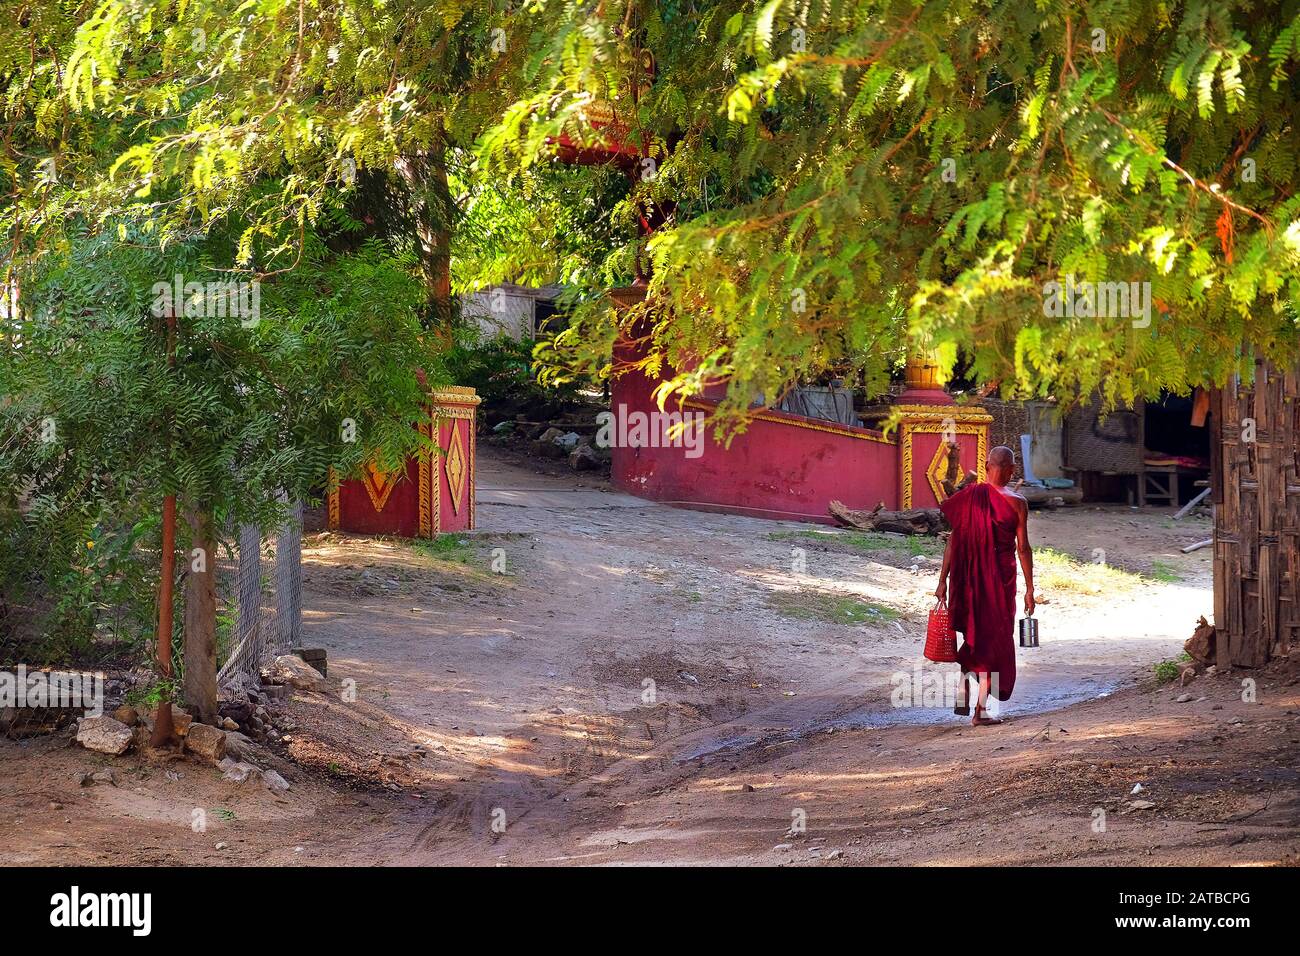 Buddhistischer Mönch in Rot gekleidet, der auf den Straßen eines örtlichen Dorfes in Mingun, Mandalay, Myanmar, inmitten grüner Vegetation spaziert. Stockfoto